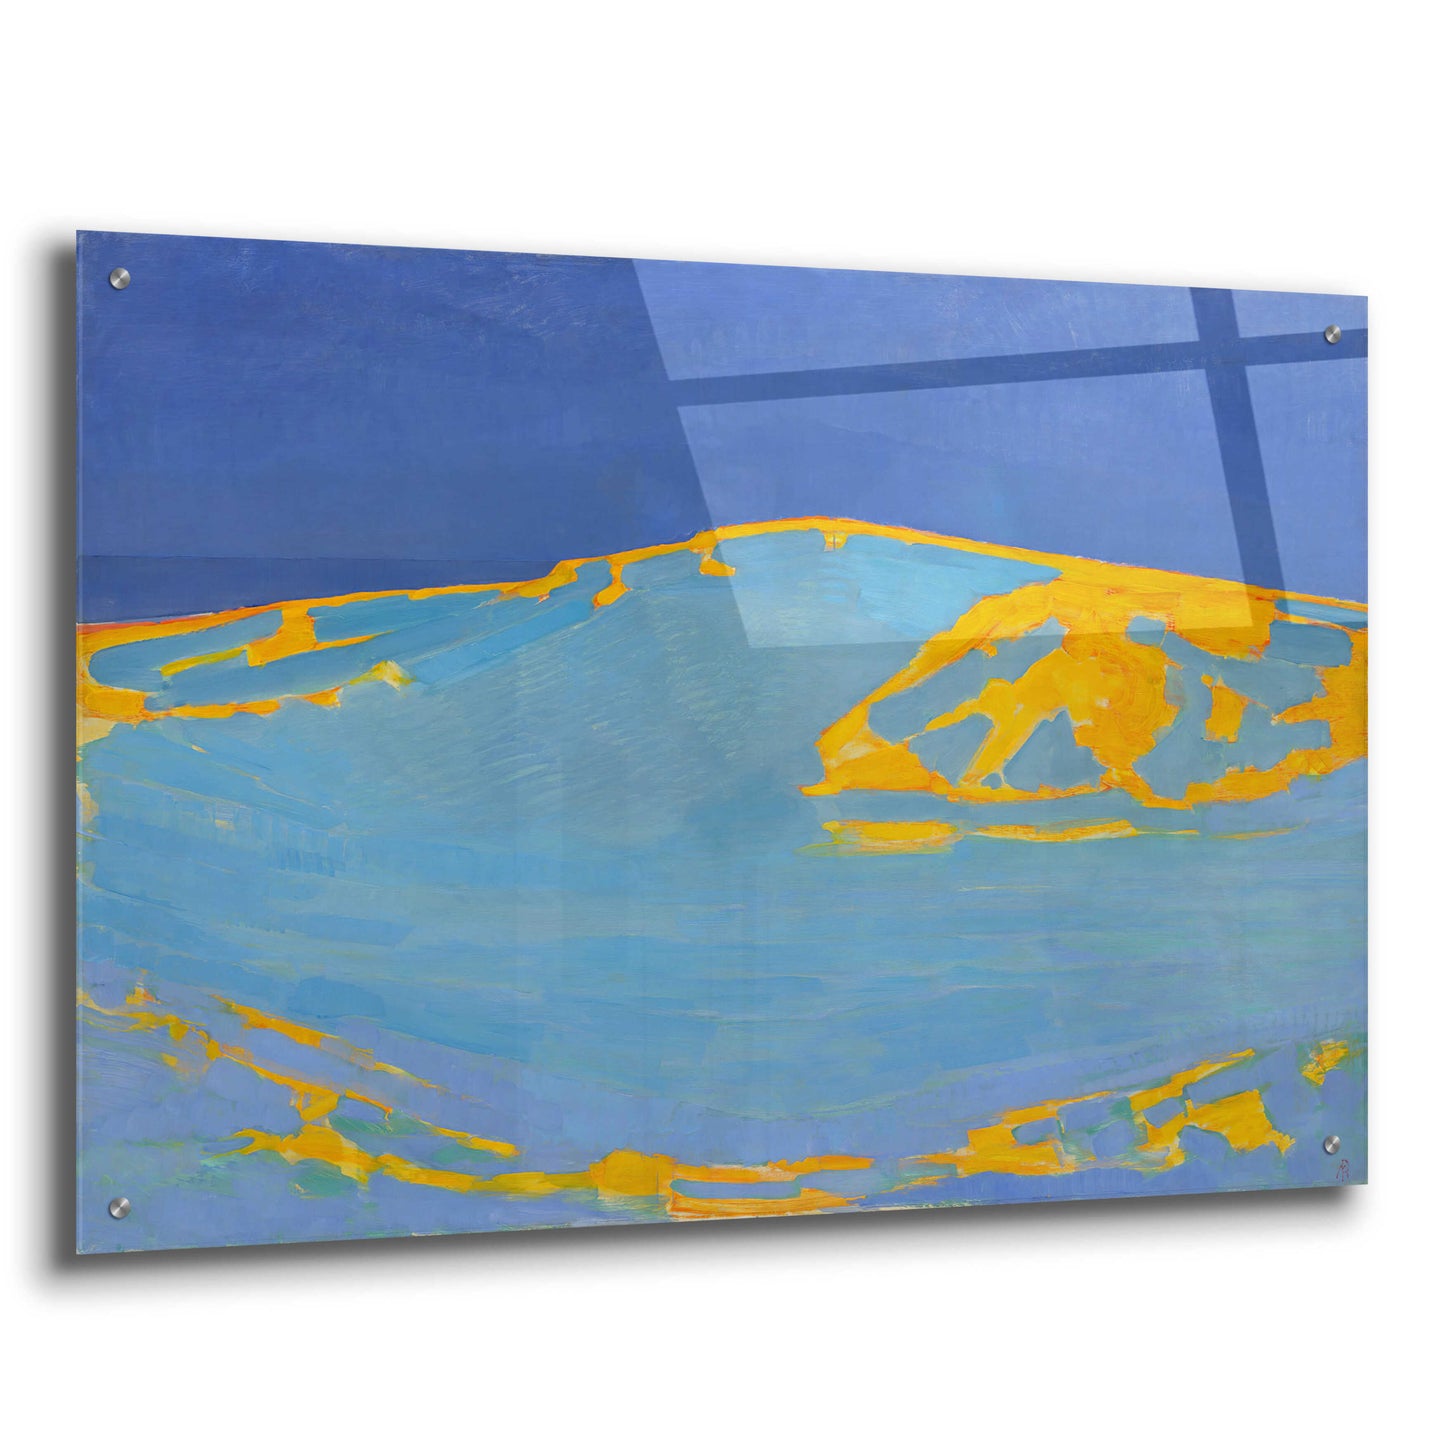 Epic Art 'Summer, Dune in Zeeland, 1910' by Piet Mondrian, Acrylic Glass Wall Art,36x24